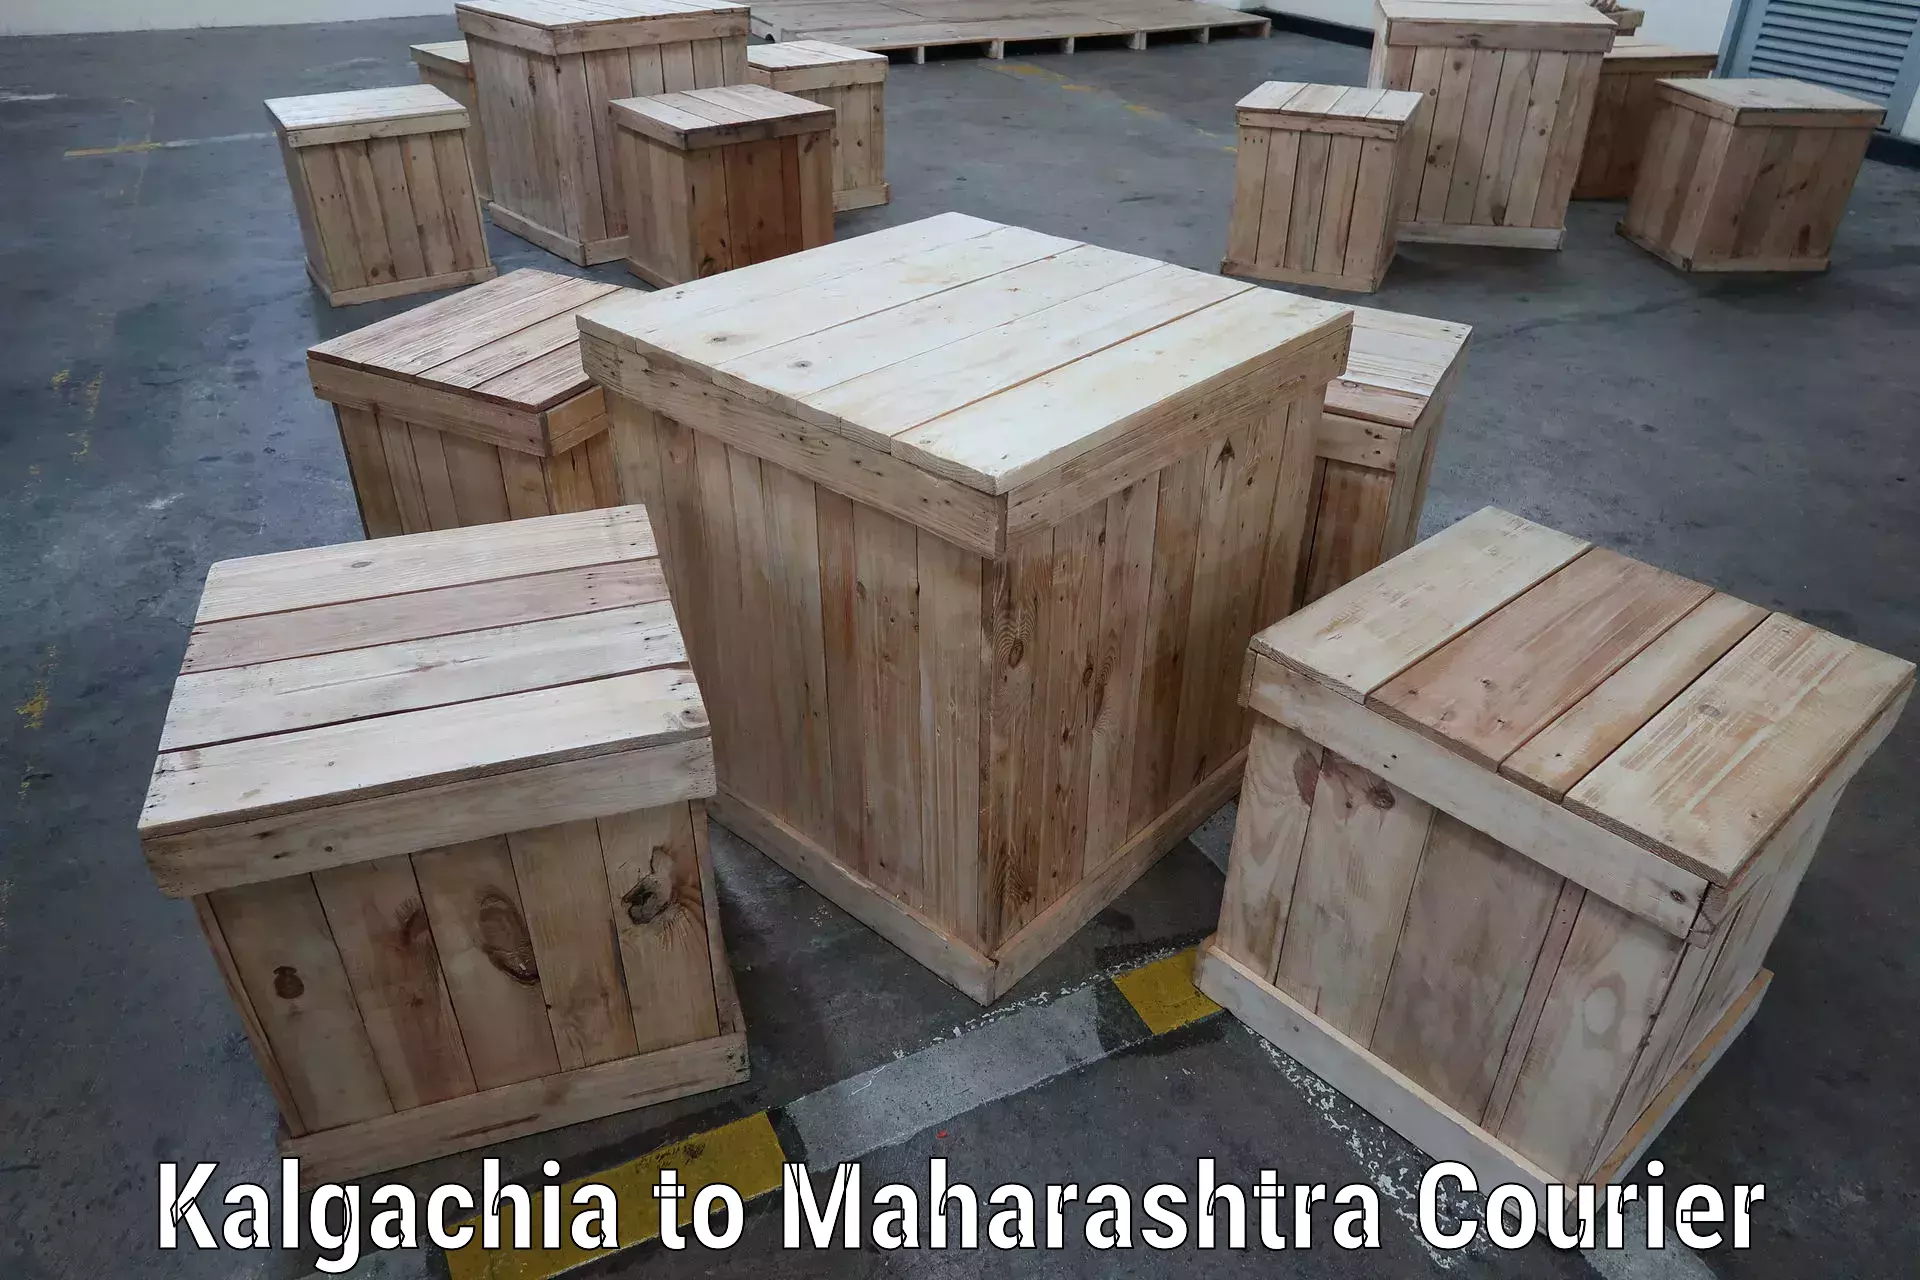 Efficient freight service Kalgachia to Maharashtra